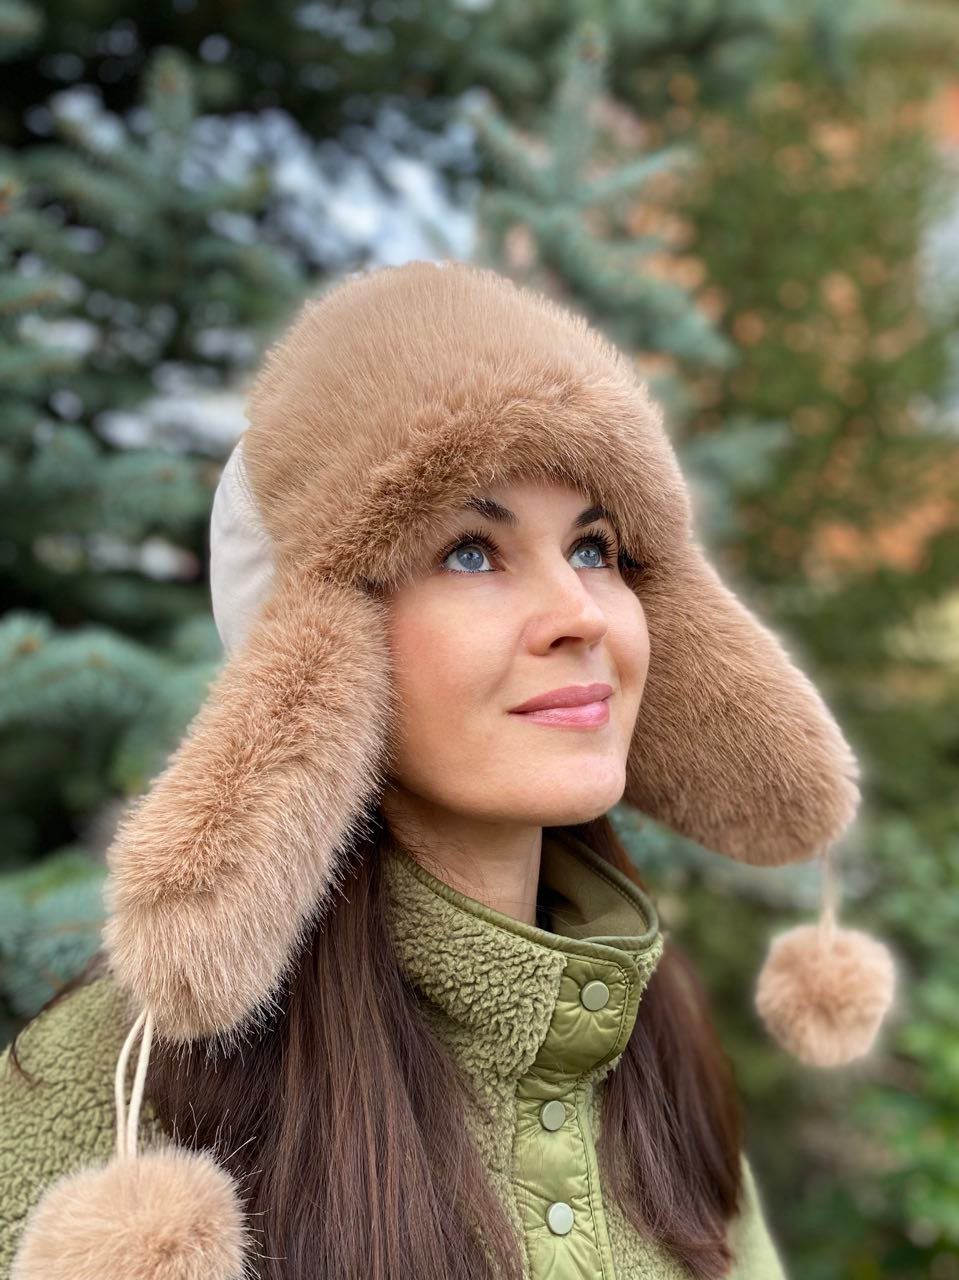 Меховые мужские шапки ушанки Купить в СПб в интернет-магазине Анны Волошко